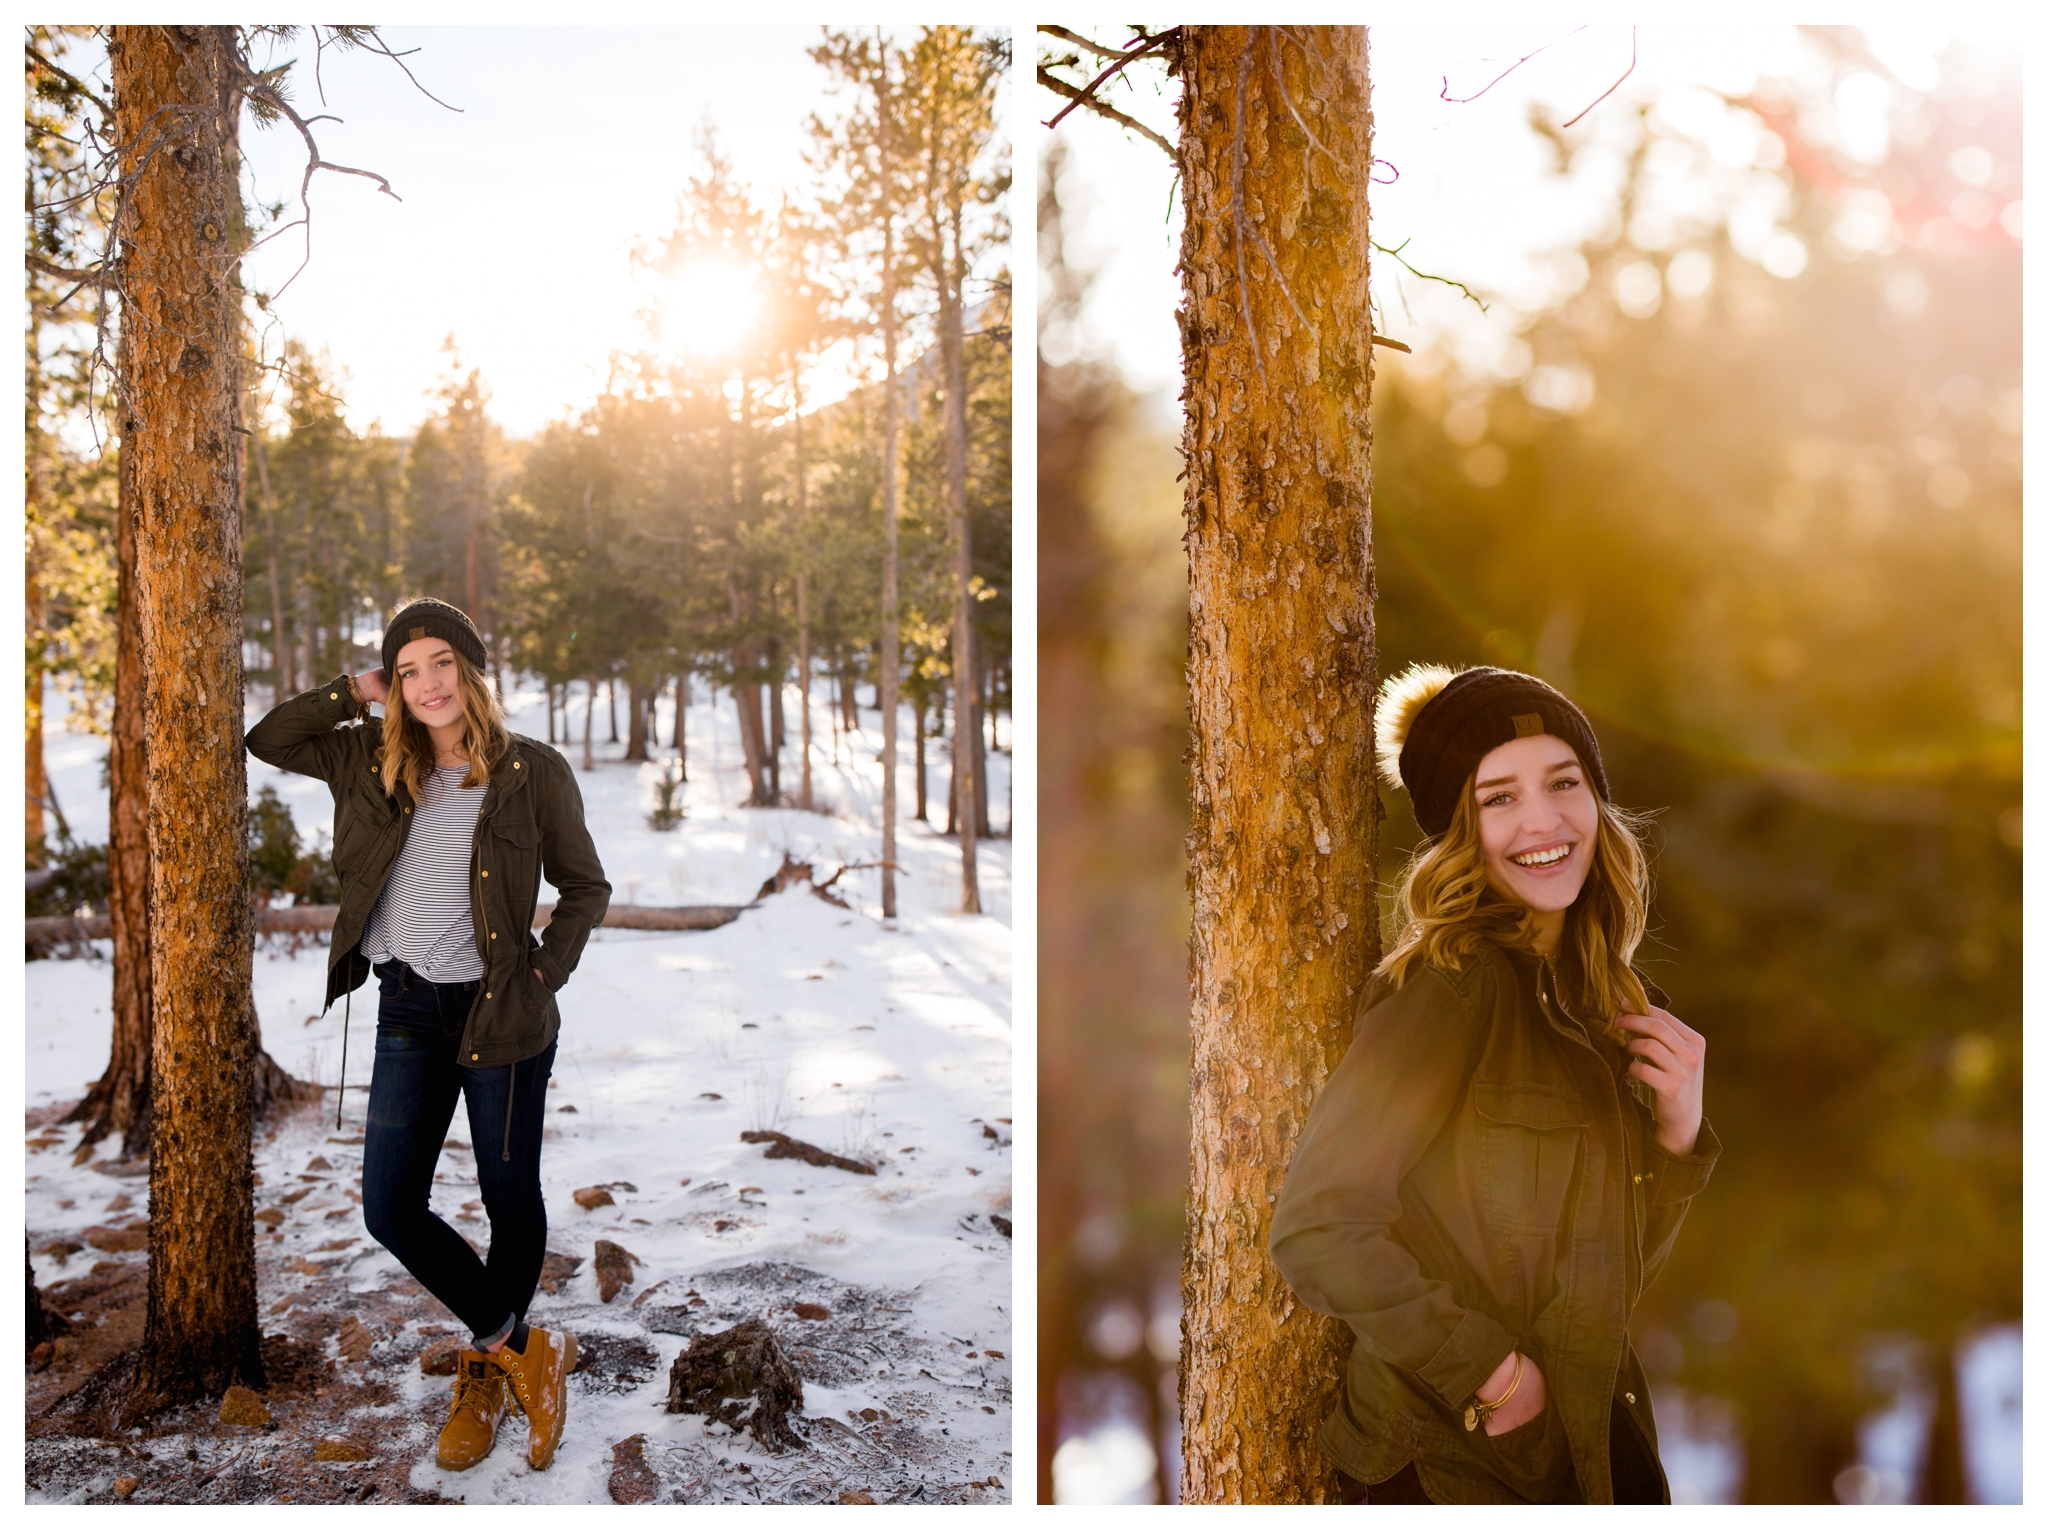 Colorado winter senior photos in Rocky Mountain National Park by Estes Park photographer Plum Pretty Photography